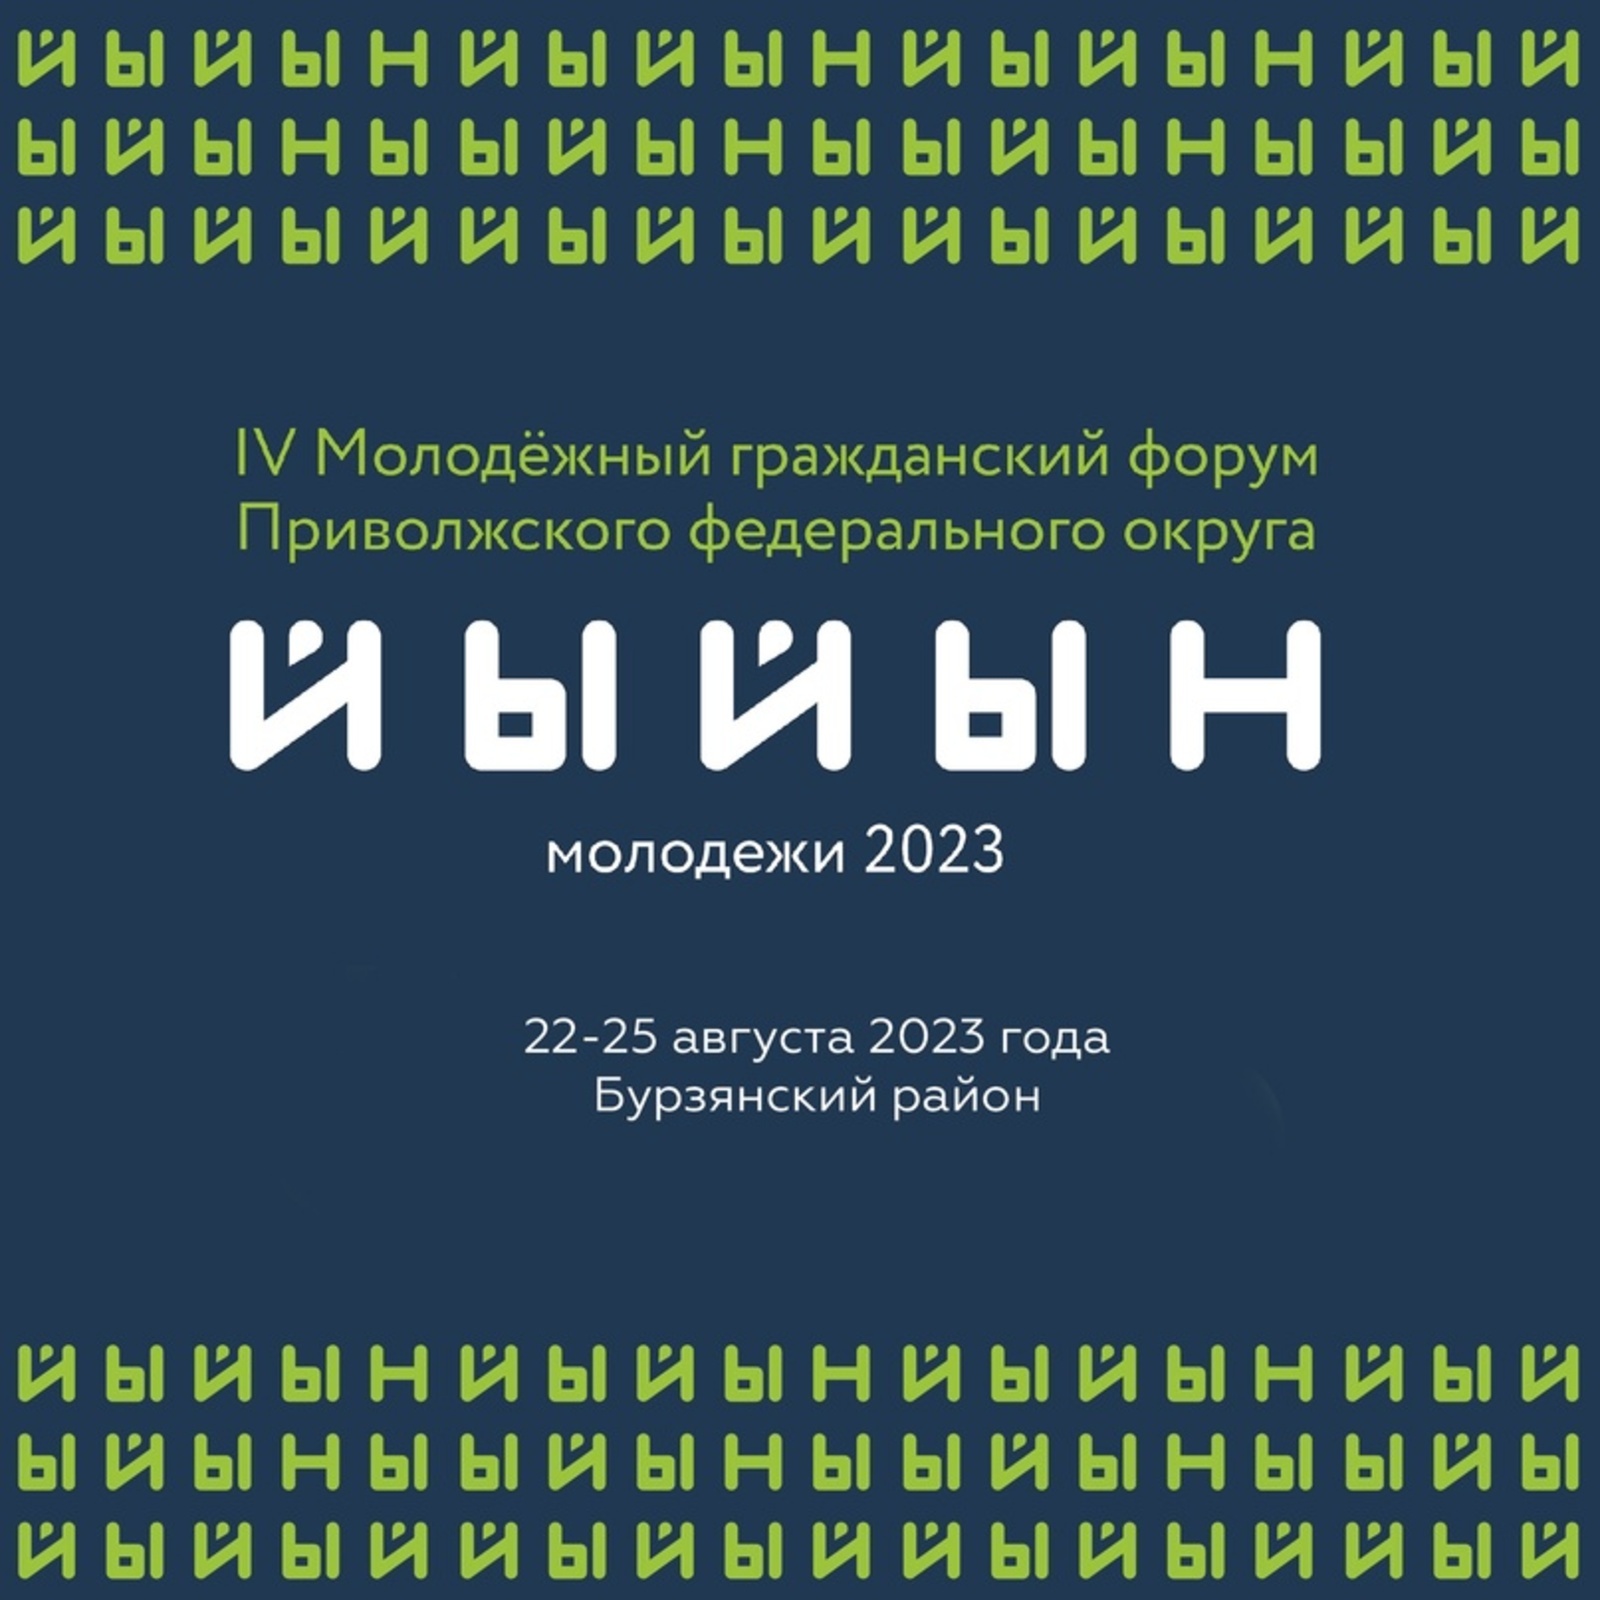 В Башкортостане пройдет IV Молодежный гражданский форум Приволжского федерального округа «Йыйын молодежи – 2023»